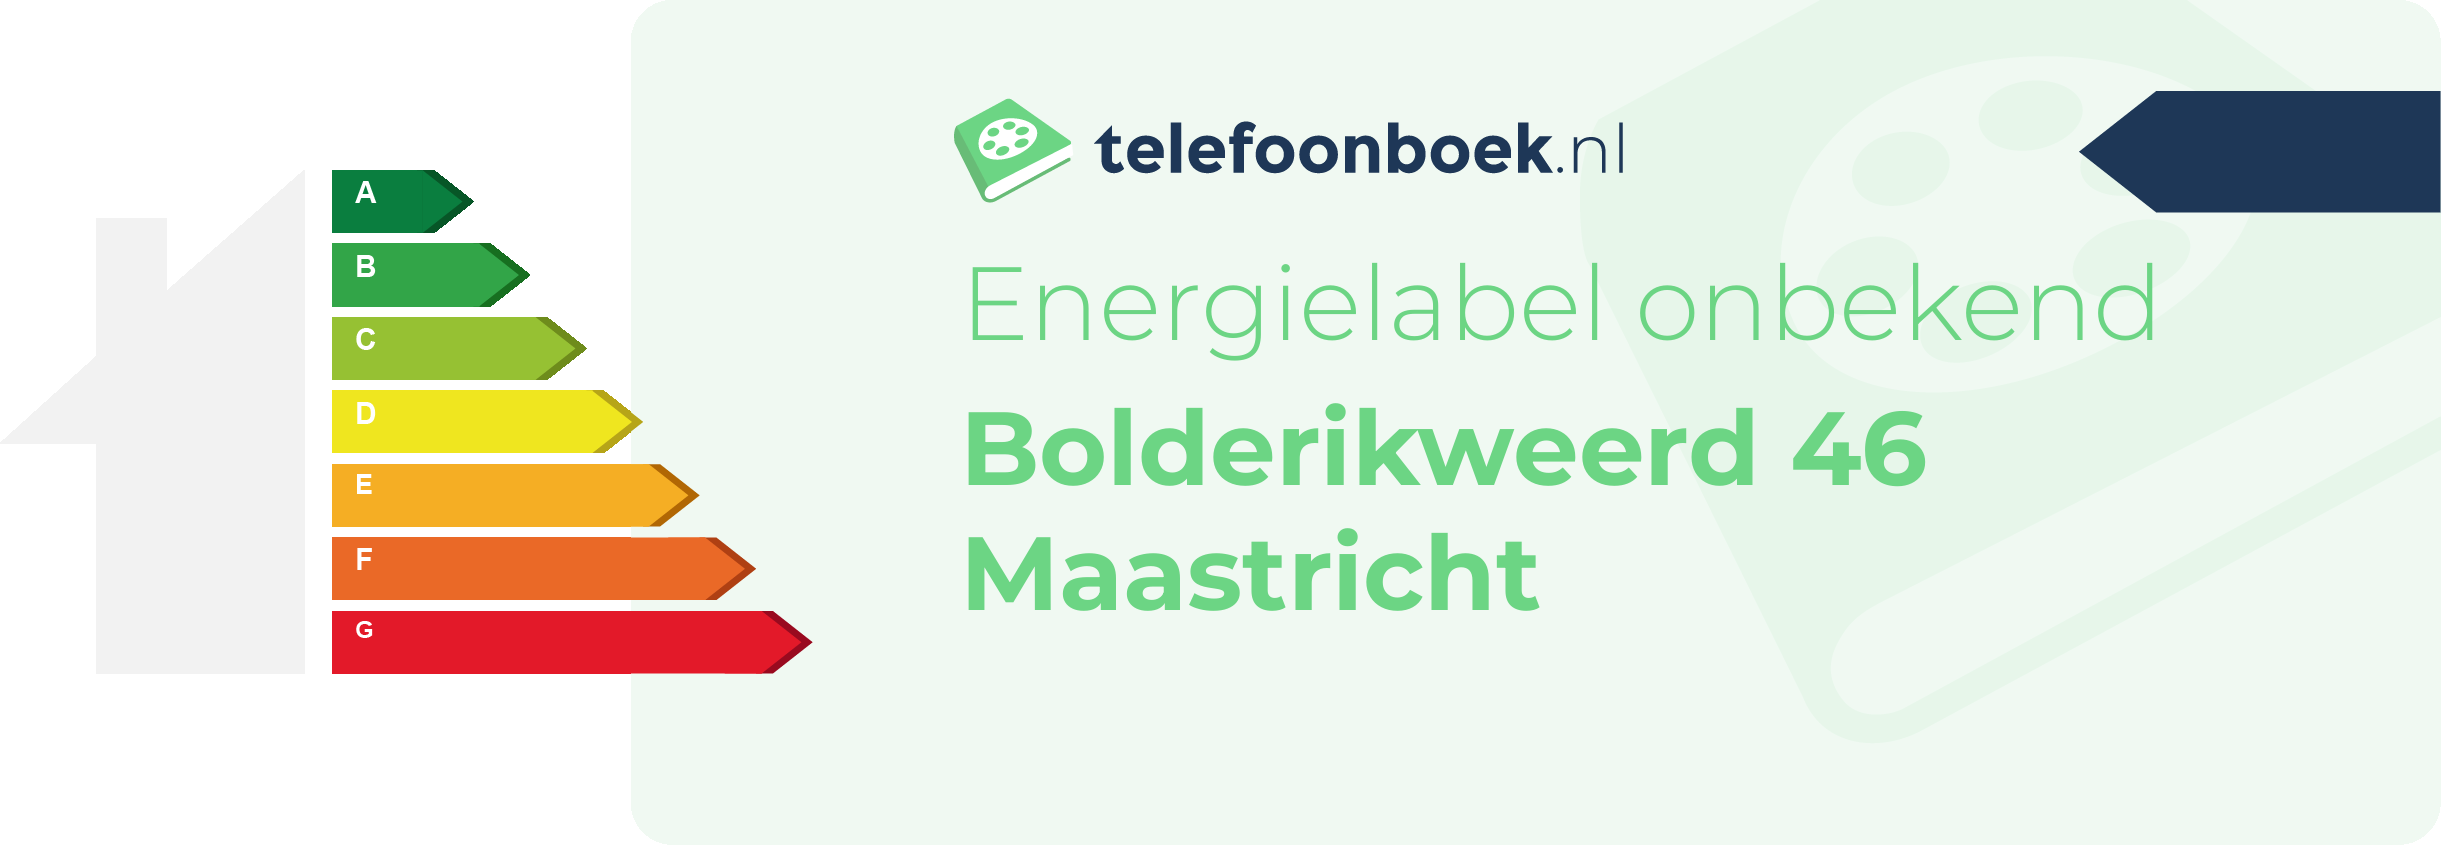 Energielabel Bolderikweerd 46 Maastricht